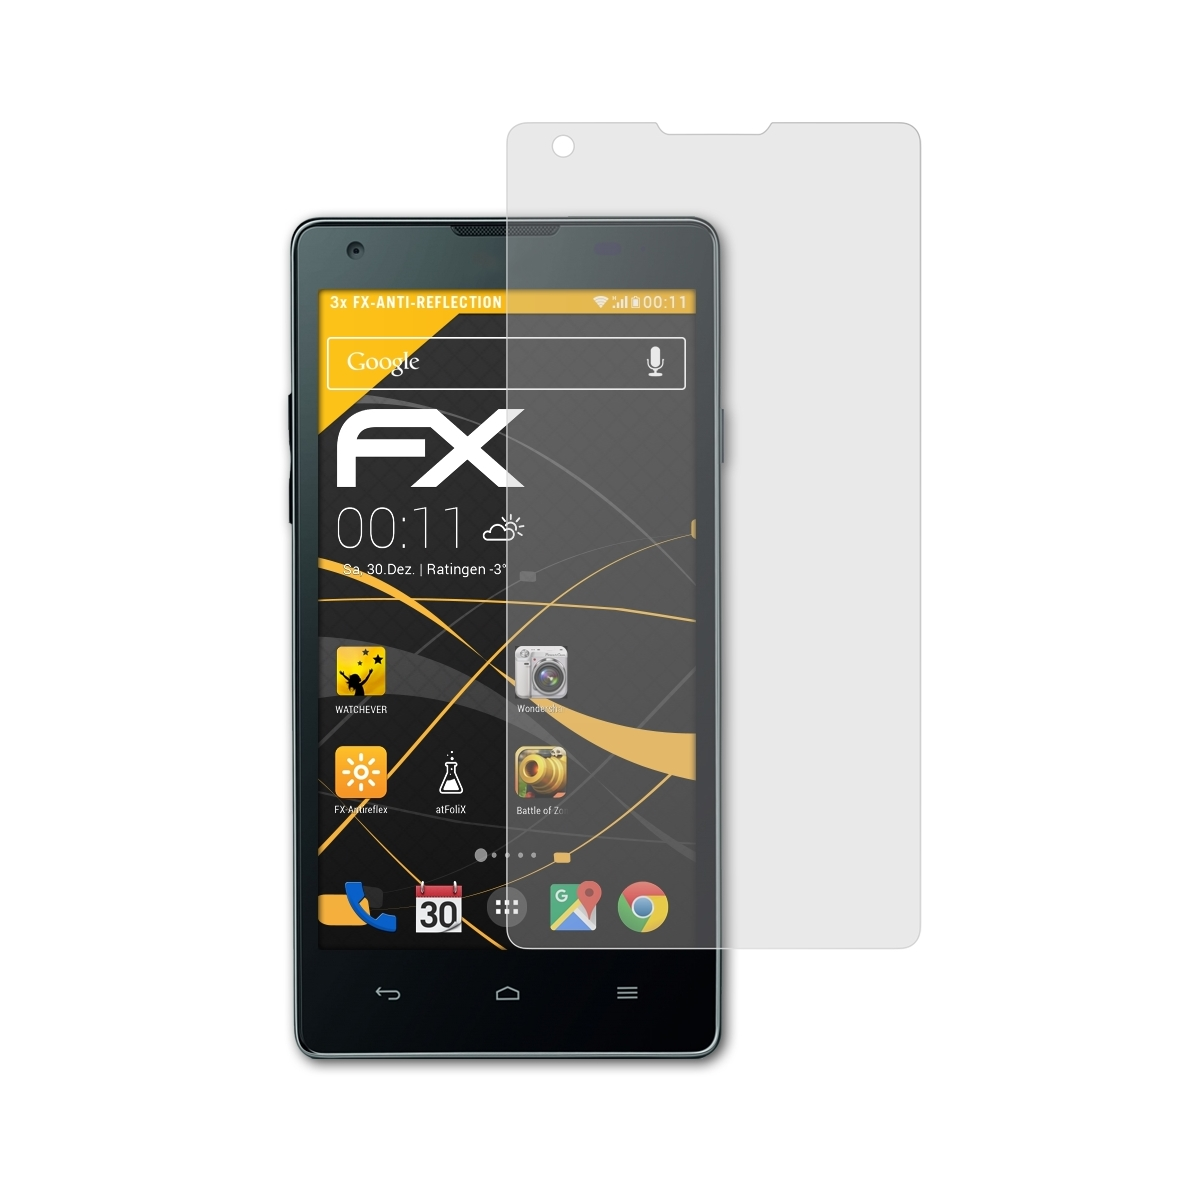 3x G700) FX-Antireflex Huawei Displayschutz(für Ascend ATFOLIX